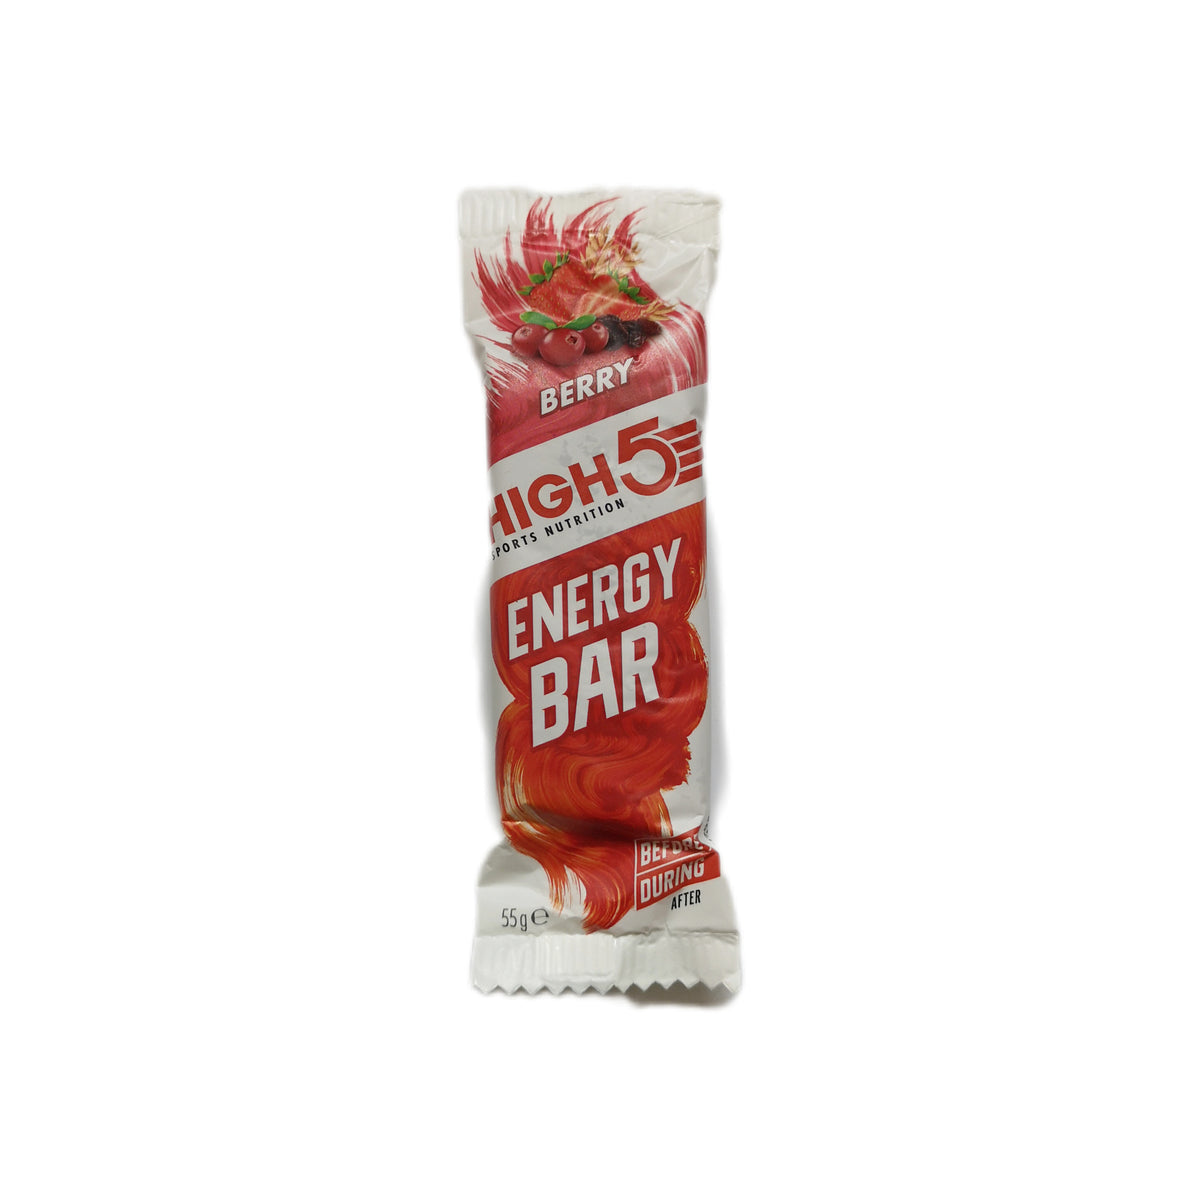 Energy Bar - High 5